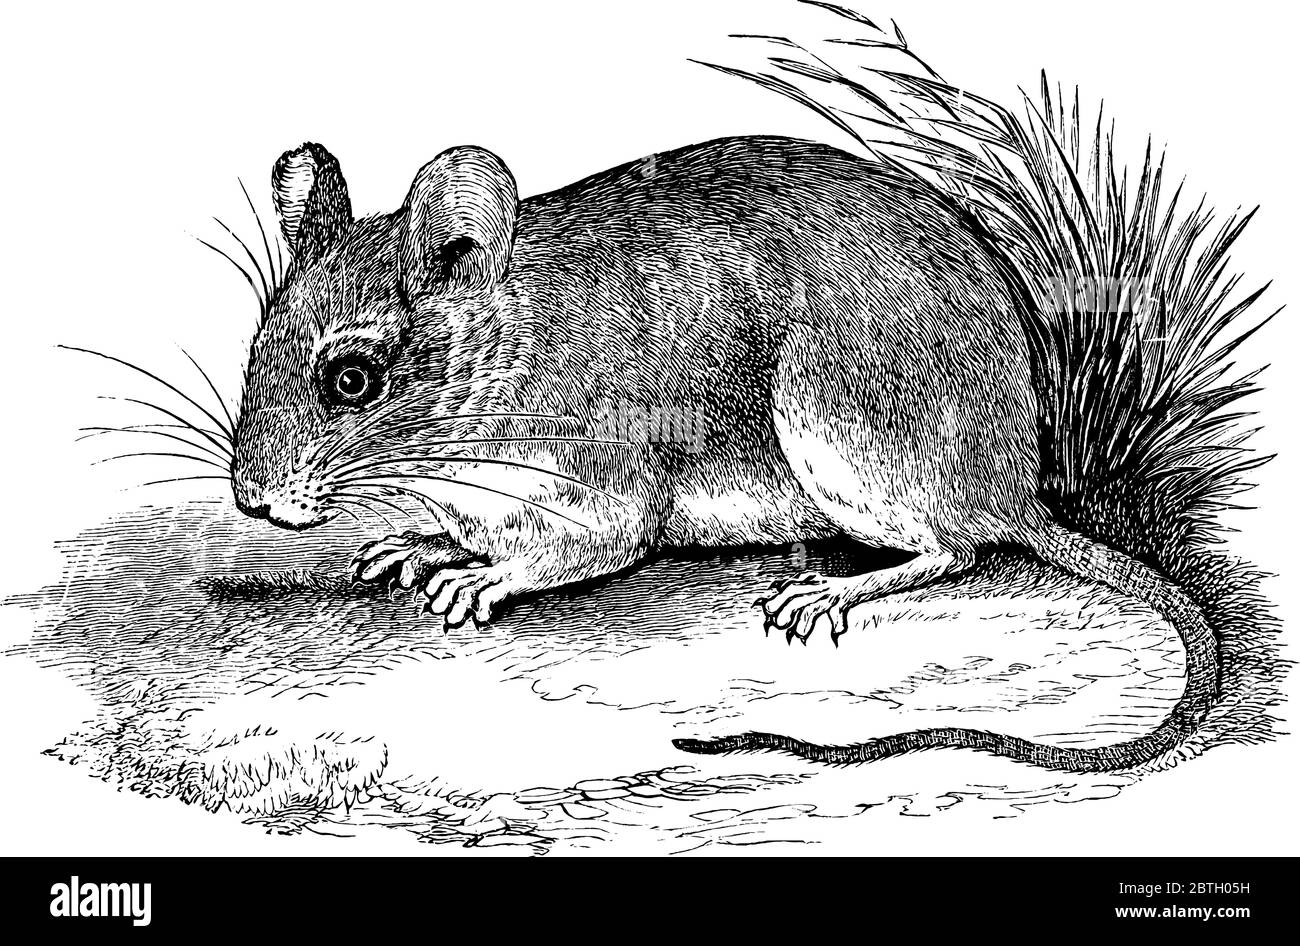 L'immagine mostra un topo cervi che riposa sulla terra con il suo ventre e le gambe, disegno di linea vintage o illustrazione di incisione. Illustrazione Vettoriale